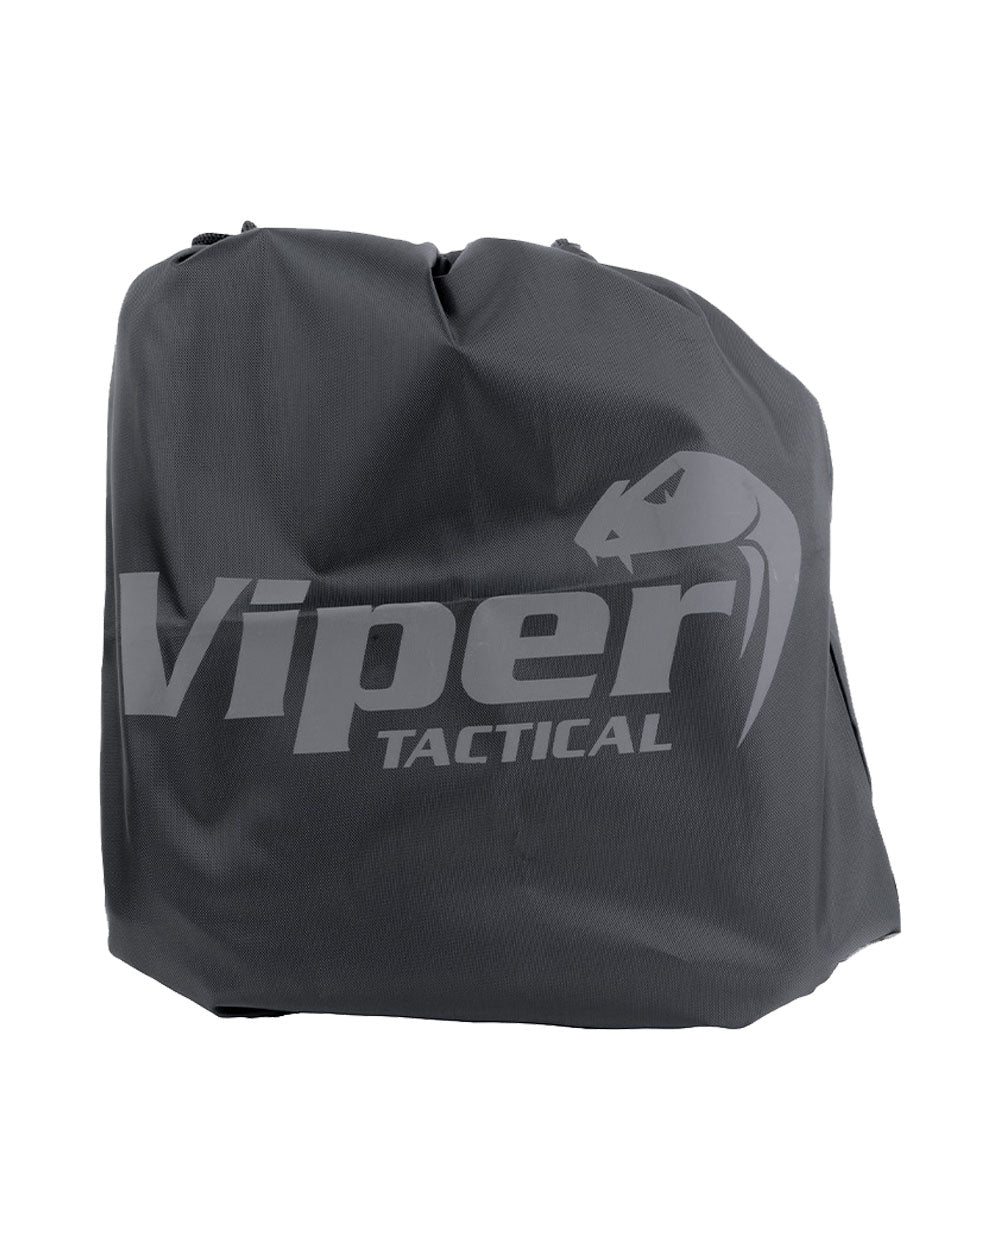 Black coloured Viper Sneaker Boot Bag on White background 